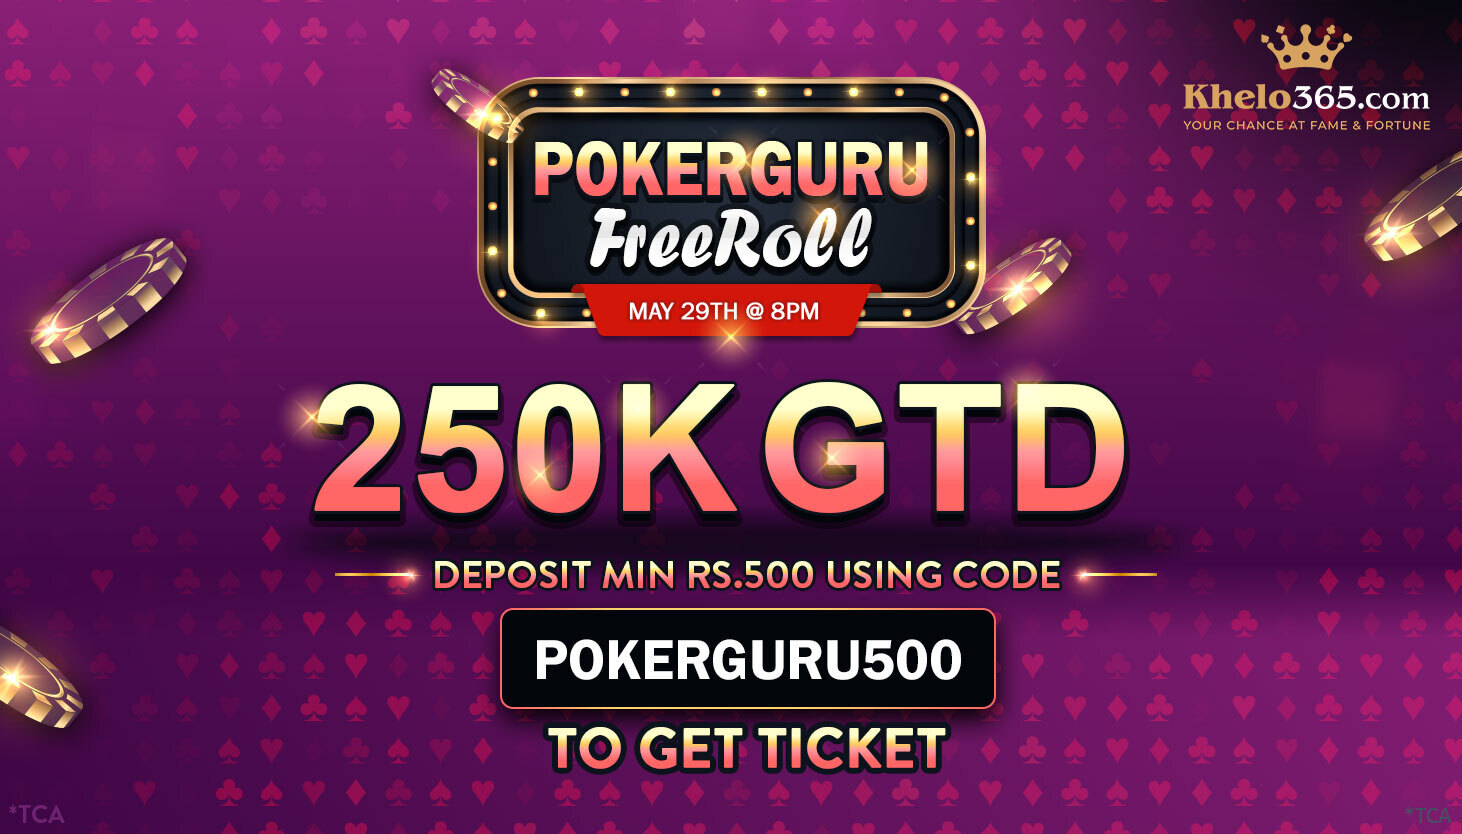 Pokerguru Freeroll 250K GTD